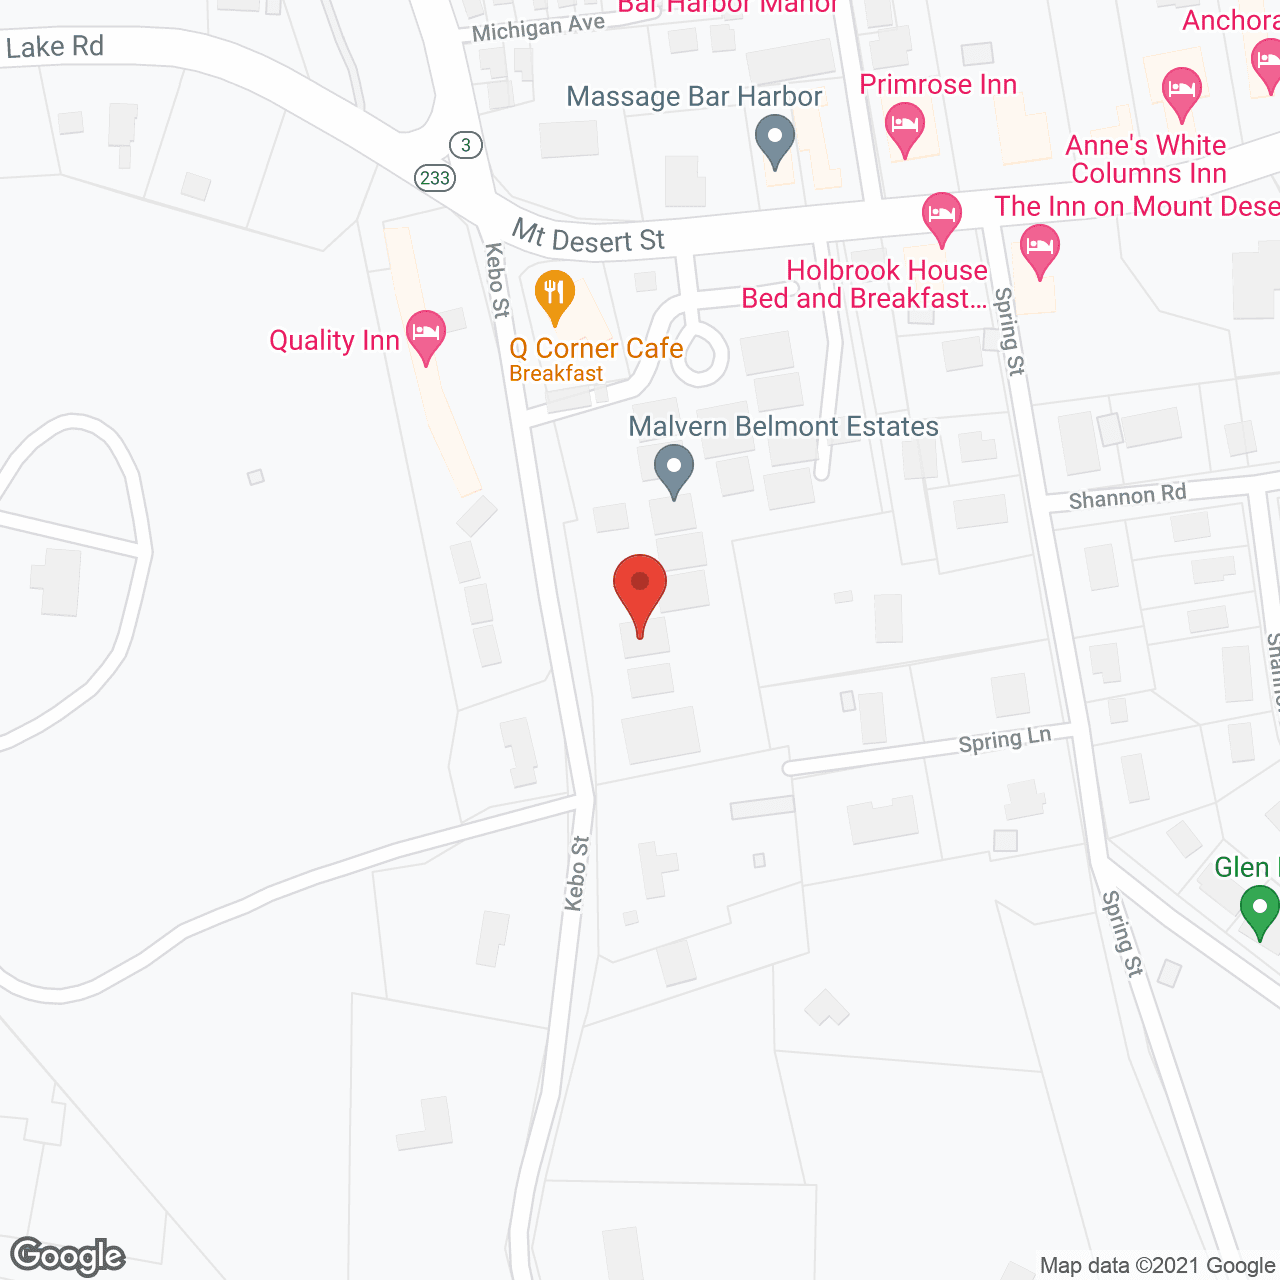 Malvern Belmont in google map